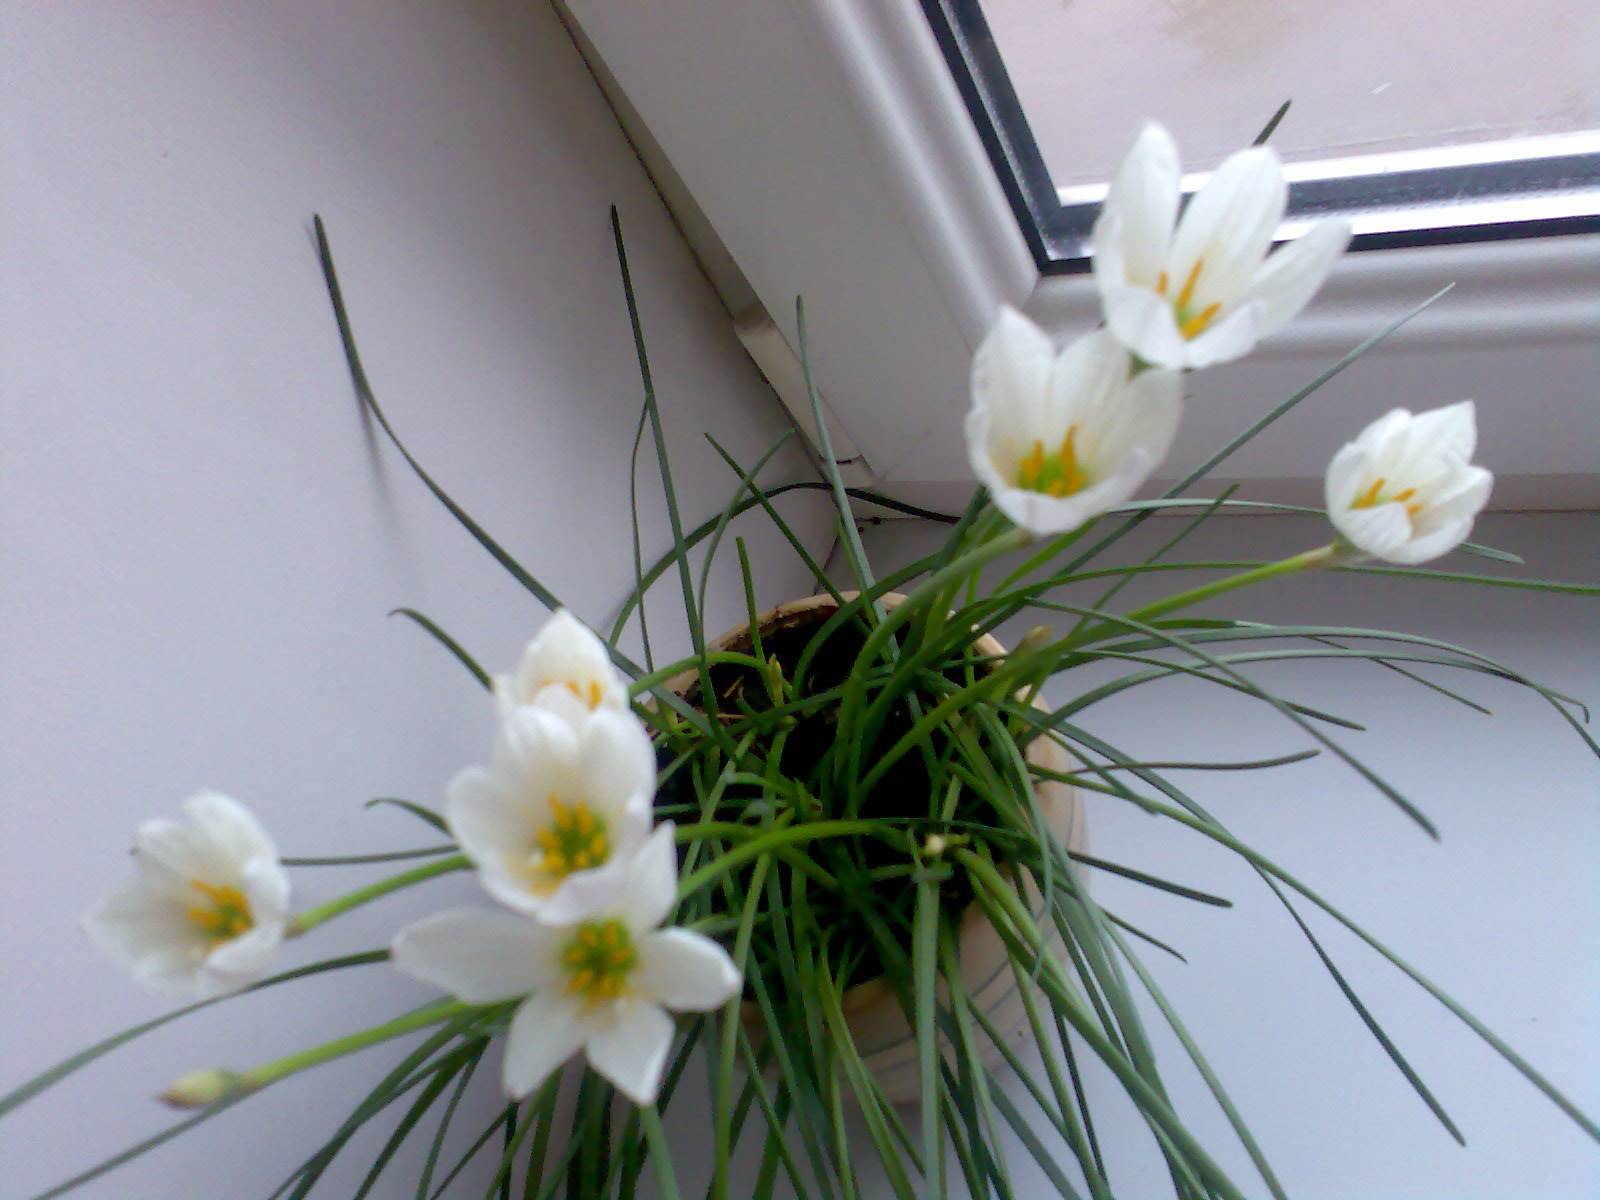 "зефирантес" (выскочка) - неприхотливый цветок: фото растения, уход в домашних условиях selo.guru — интернет портал о сельском хозяйстве